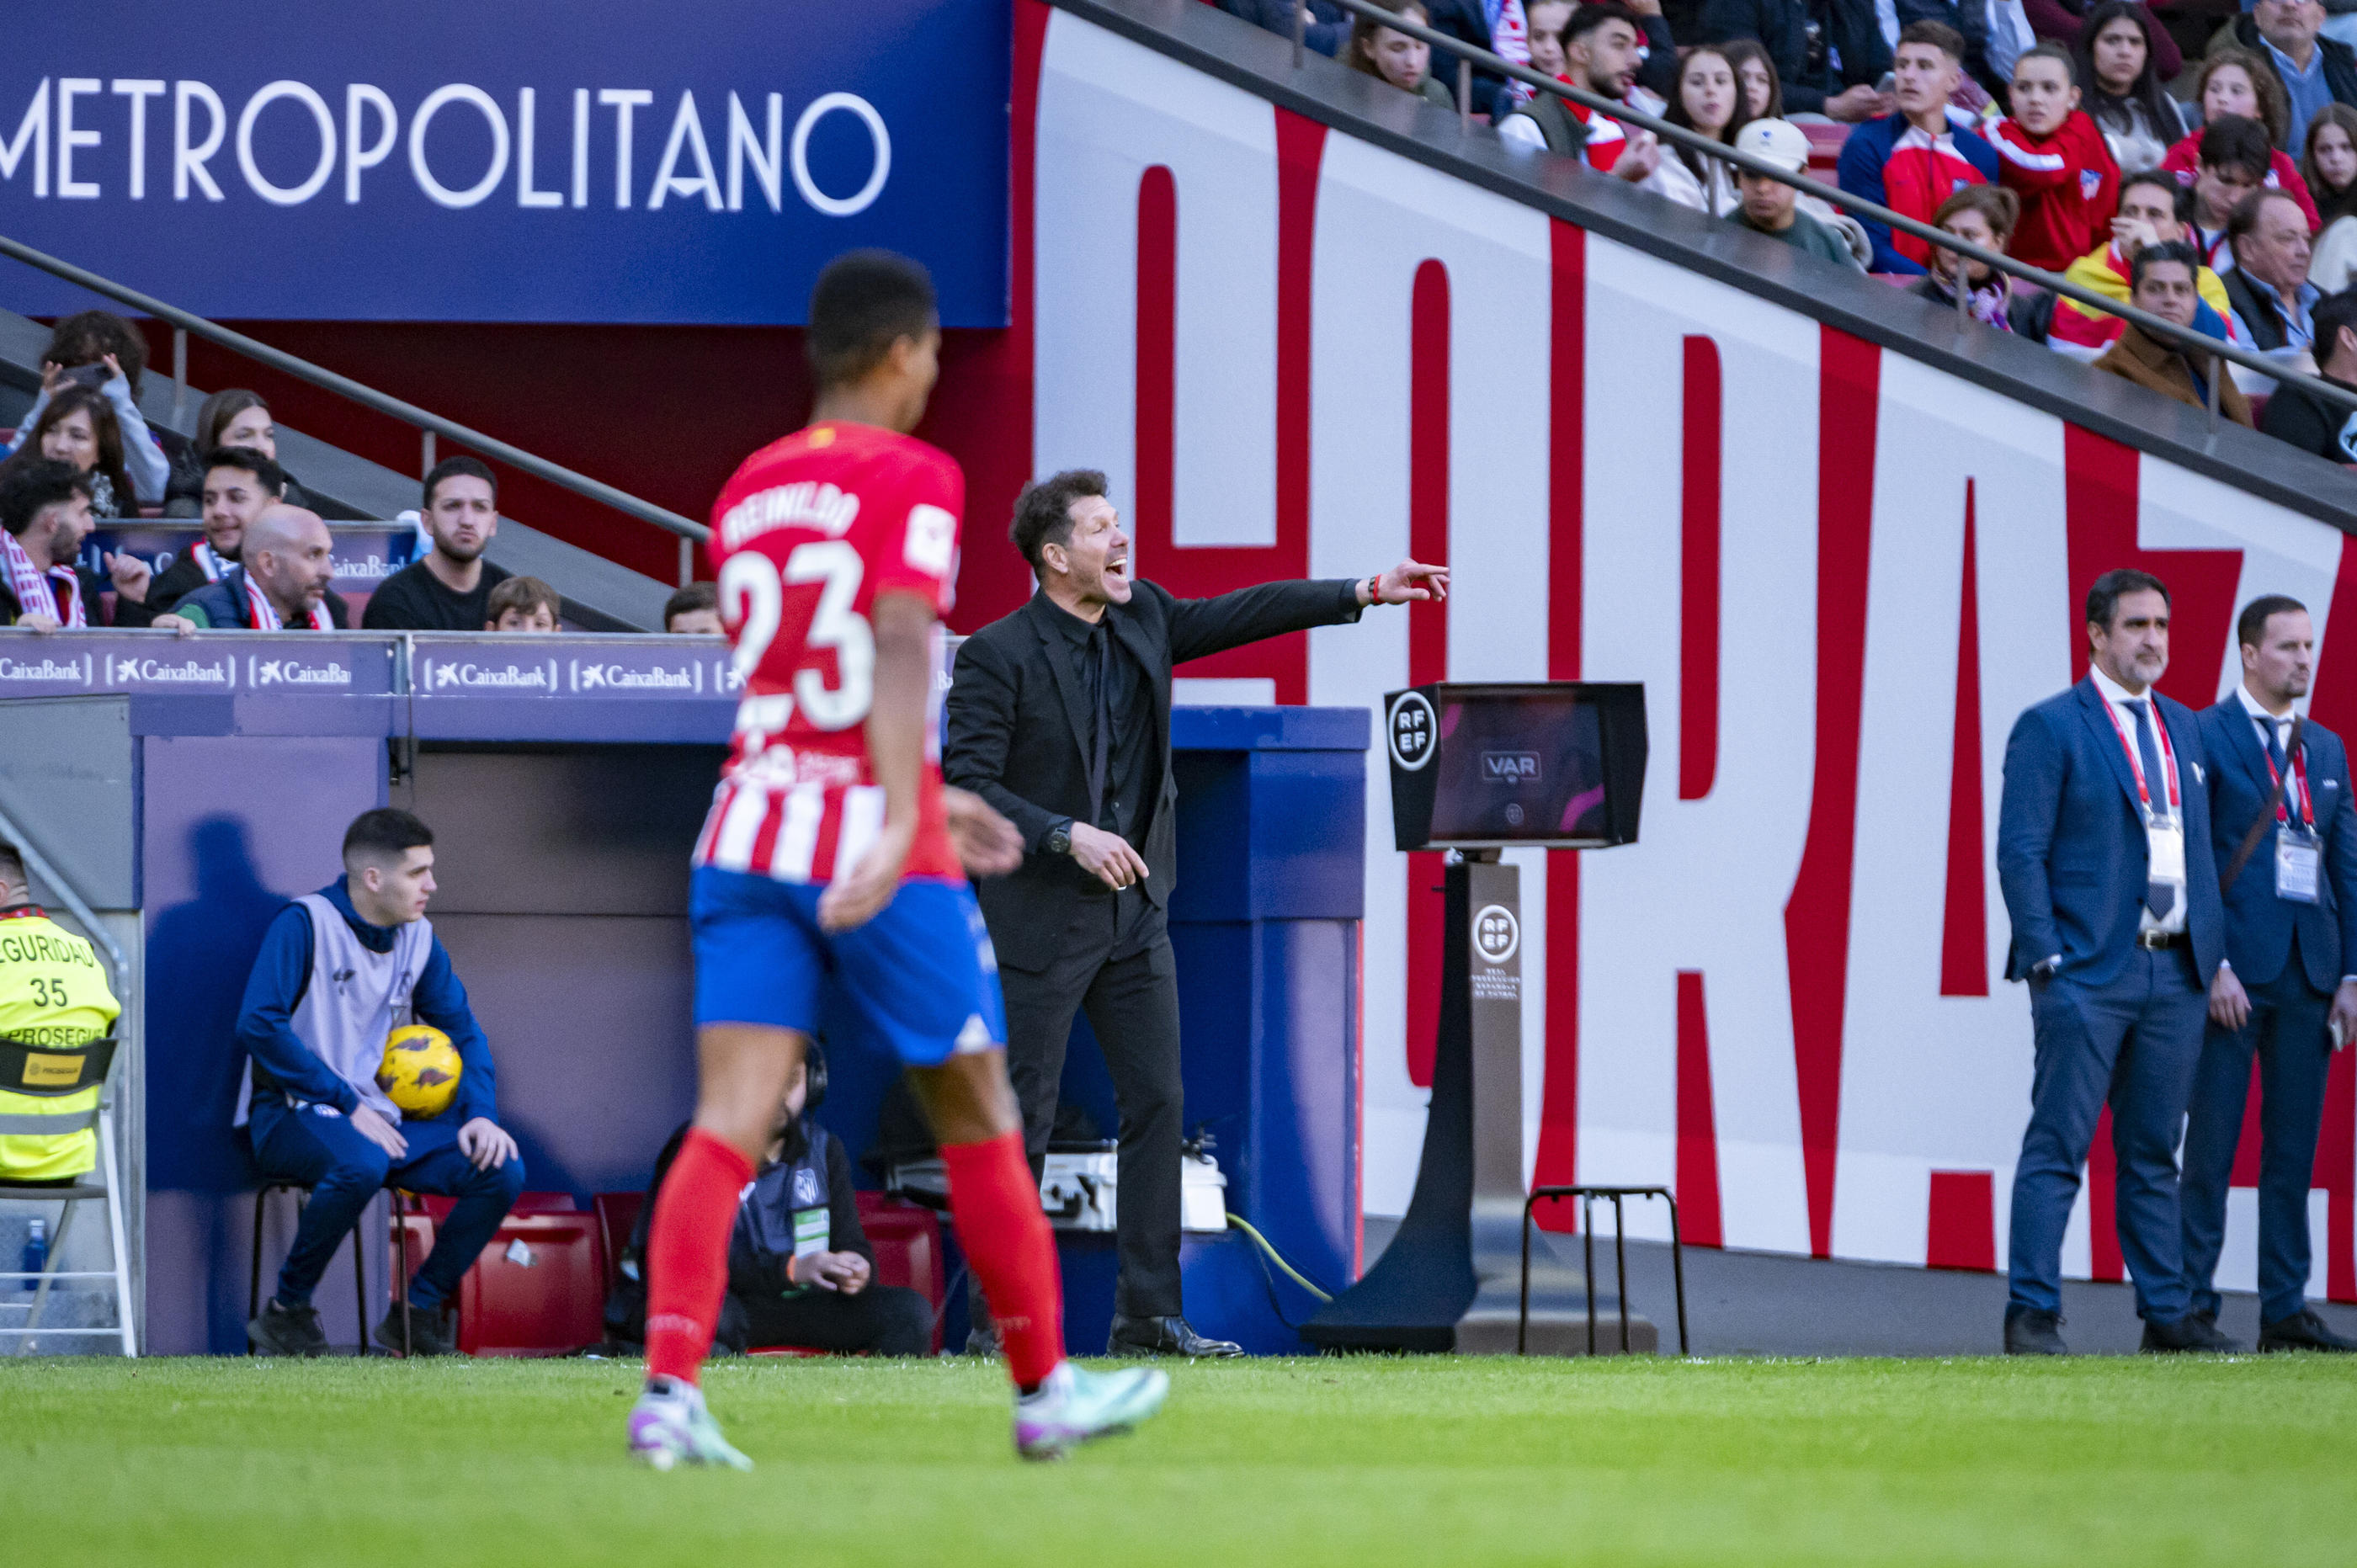 Sans Antoine Griezmann, blessé, l’Atlético de Madrid de Diego Simeone se rend sur la pelouse de Bilbao, jeudi soir en demie retour de Coupe d'Espagne. Icon Sport